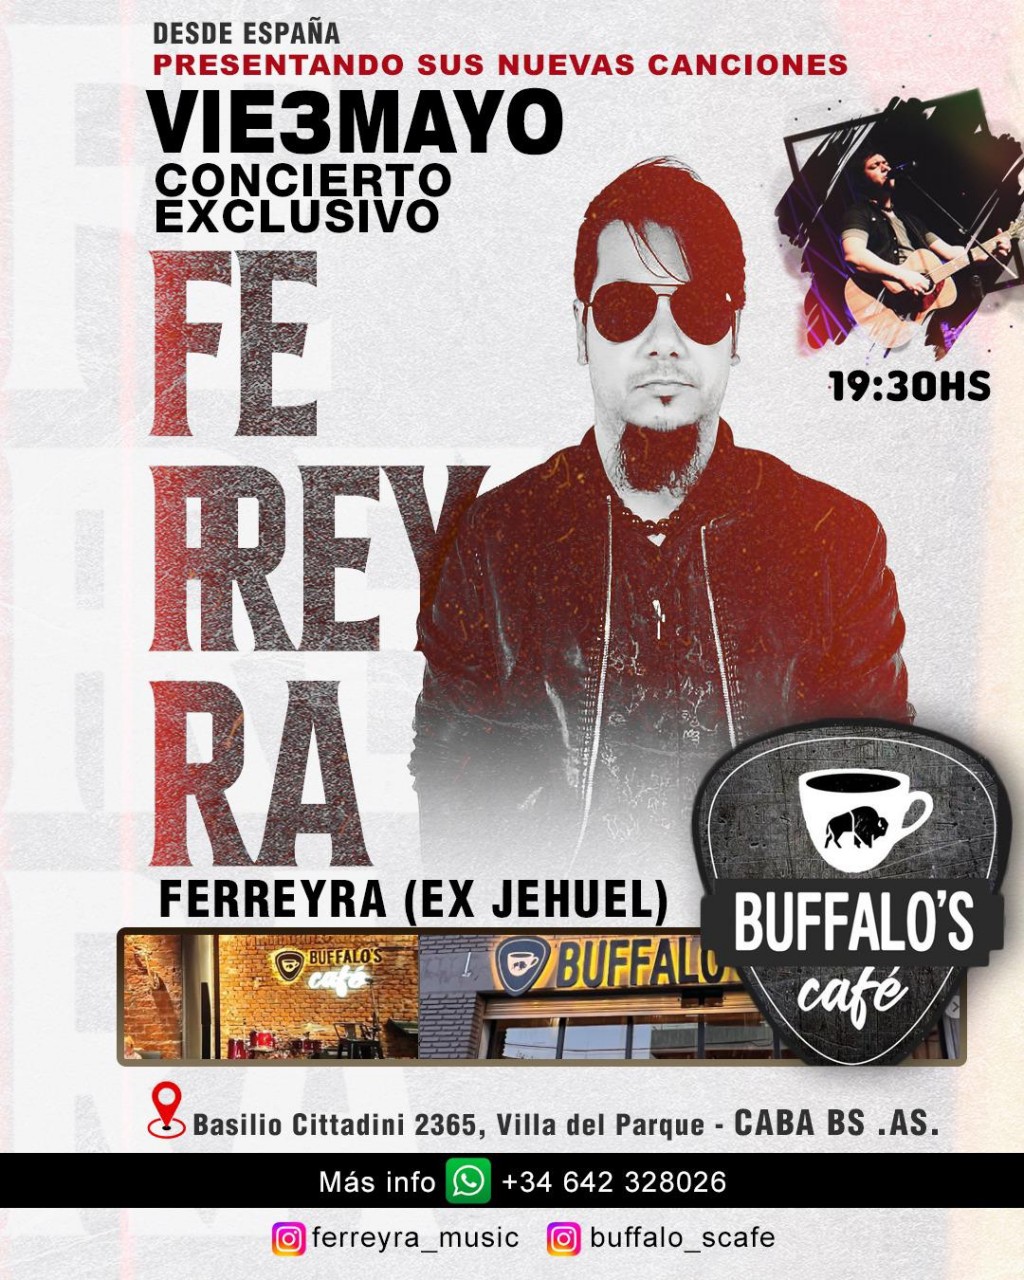 Ferreyra, exintegrante de Jehuel, presenta sus nuevas canciones en un concierto exclusivo en Bufalo's Cafe